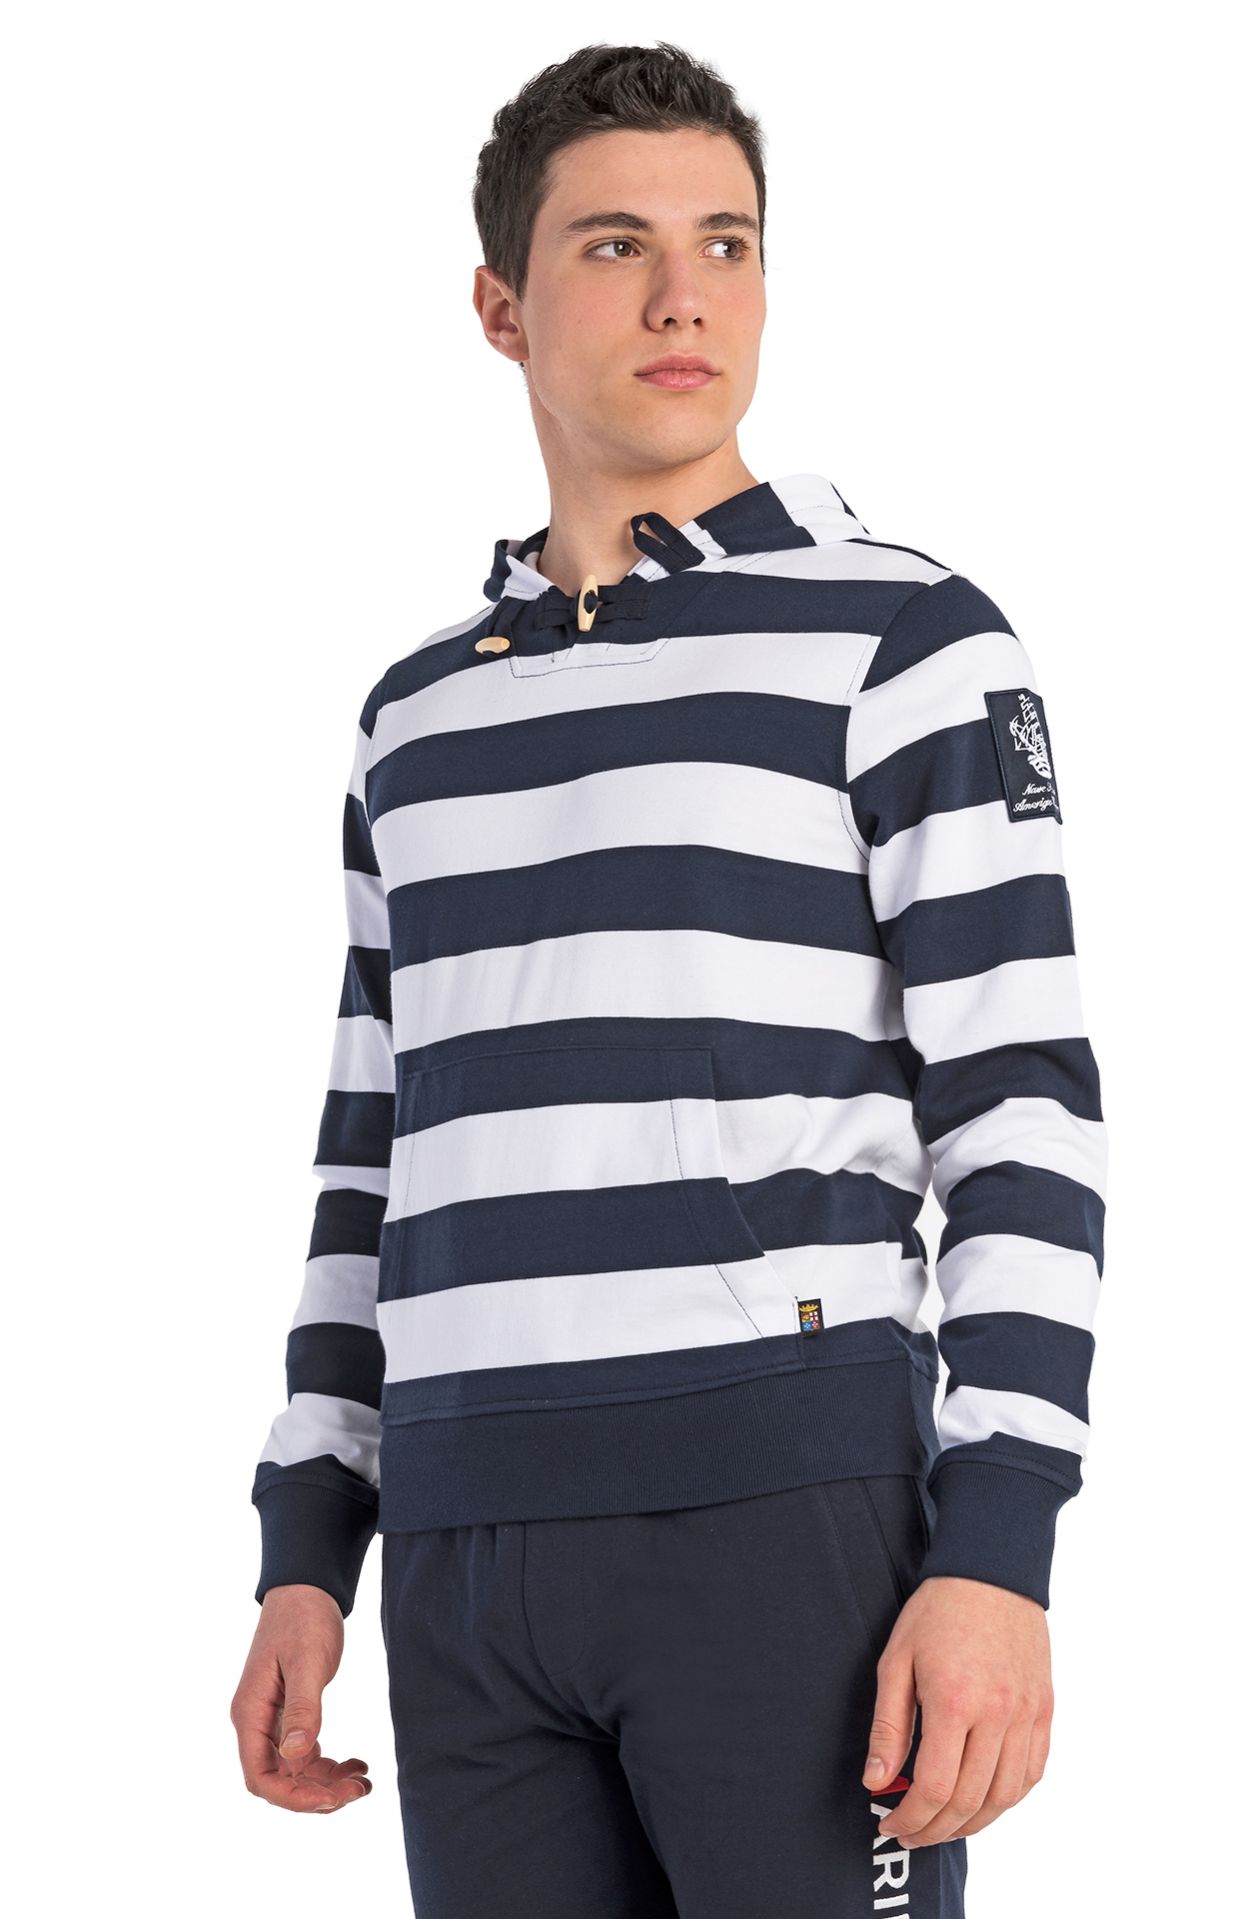 Amerigo Vespucci sweatshirt